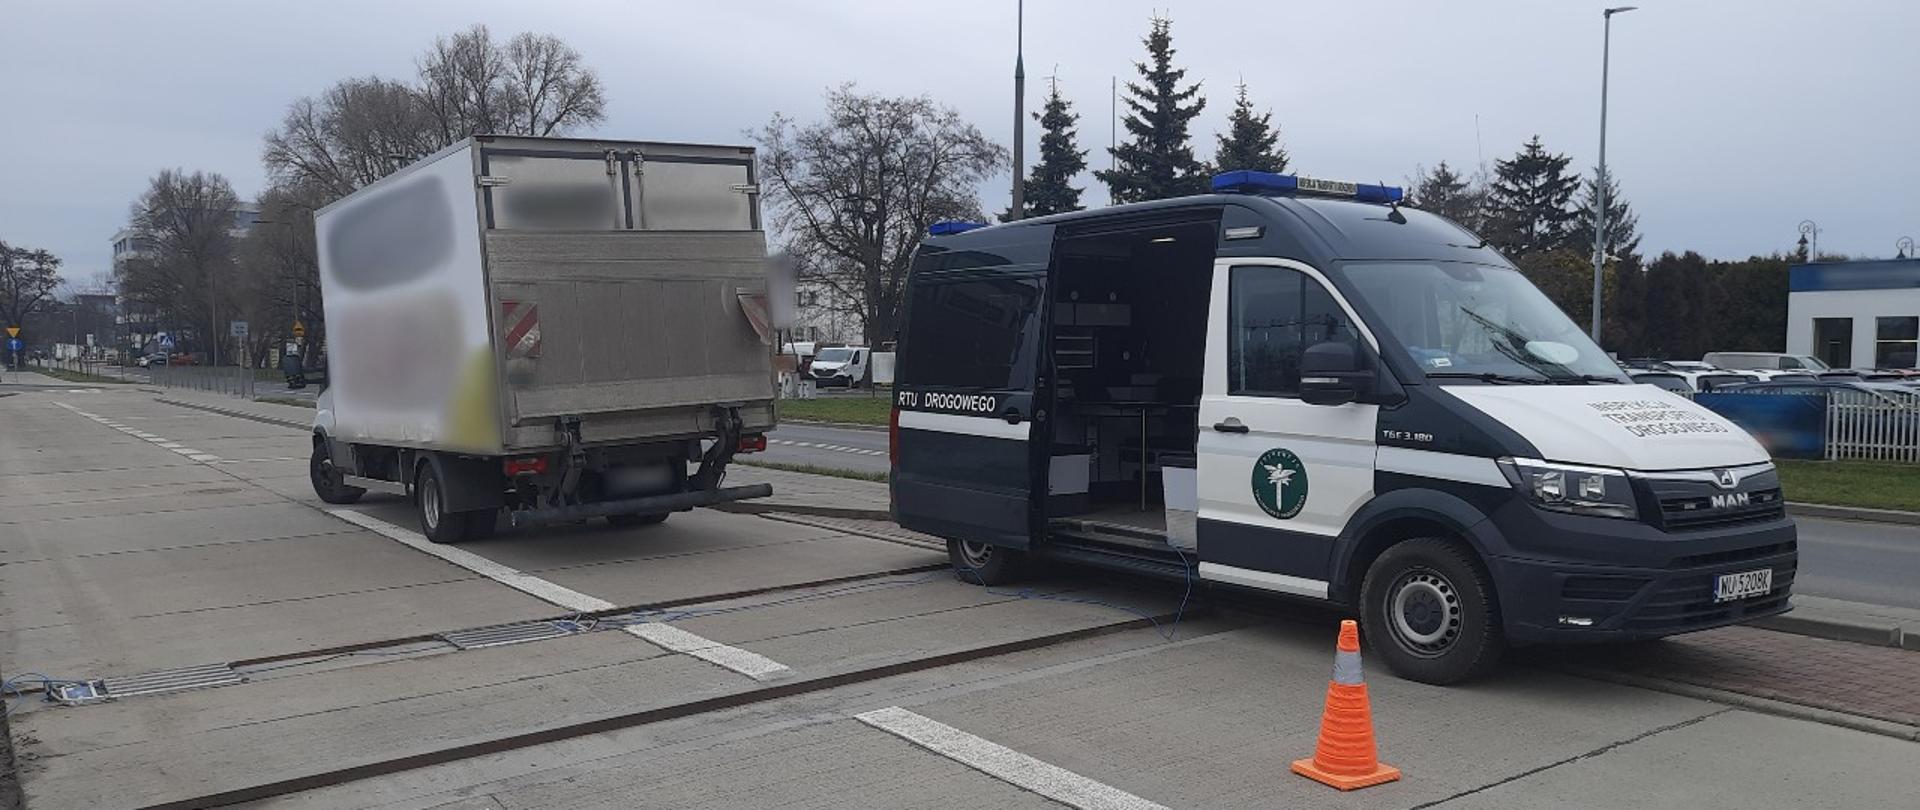 Miejsce kontroli niewielkiej ciężarówki zatrzymanej przez patrol mazowieckiej Inspekcji Transportu Drogowego na terenie Warszawy.